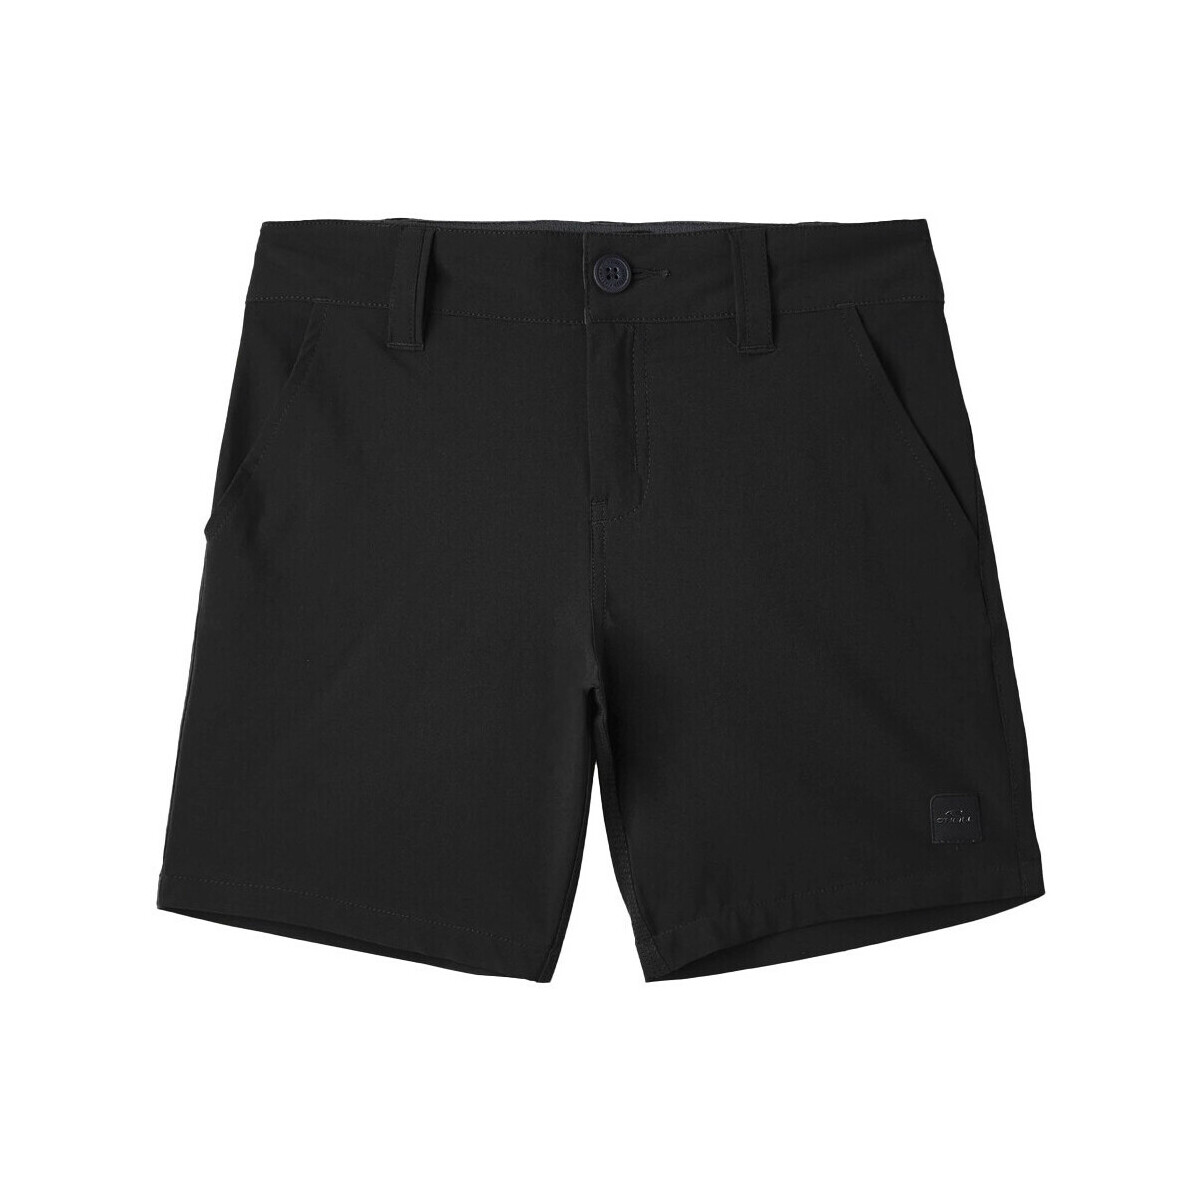 Vêtements Garçon Shorts / Bermudas O'neill 4700013-19010 Noir